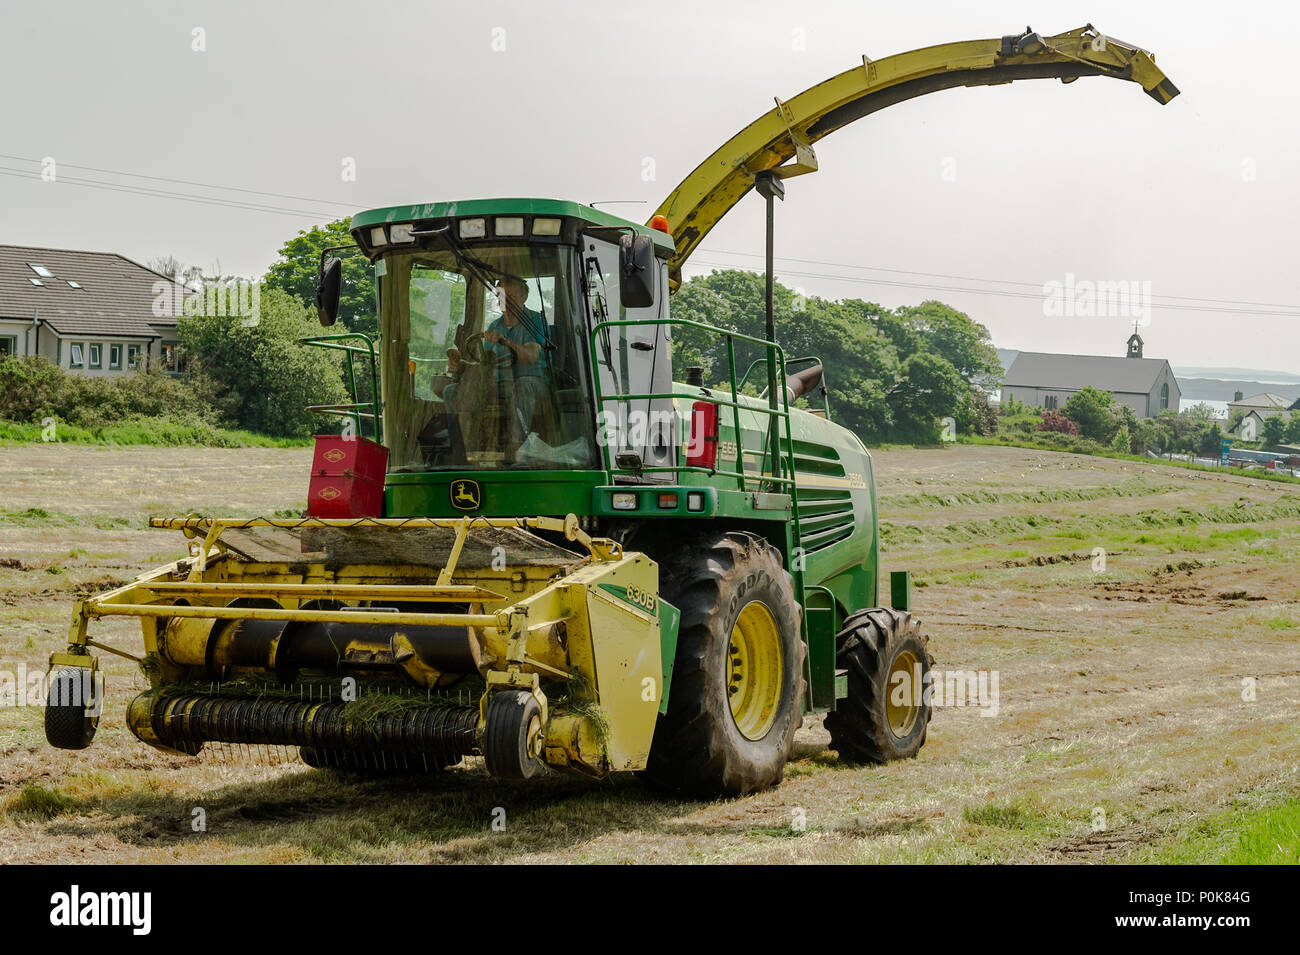 Moissonneuse-batteuse John Deere 7500 au travail la collecte de l'herbe coupée pour l'ensilage dans une ferme à Schull, comté de Cork, Irlande. Banque D'Images